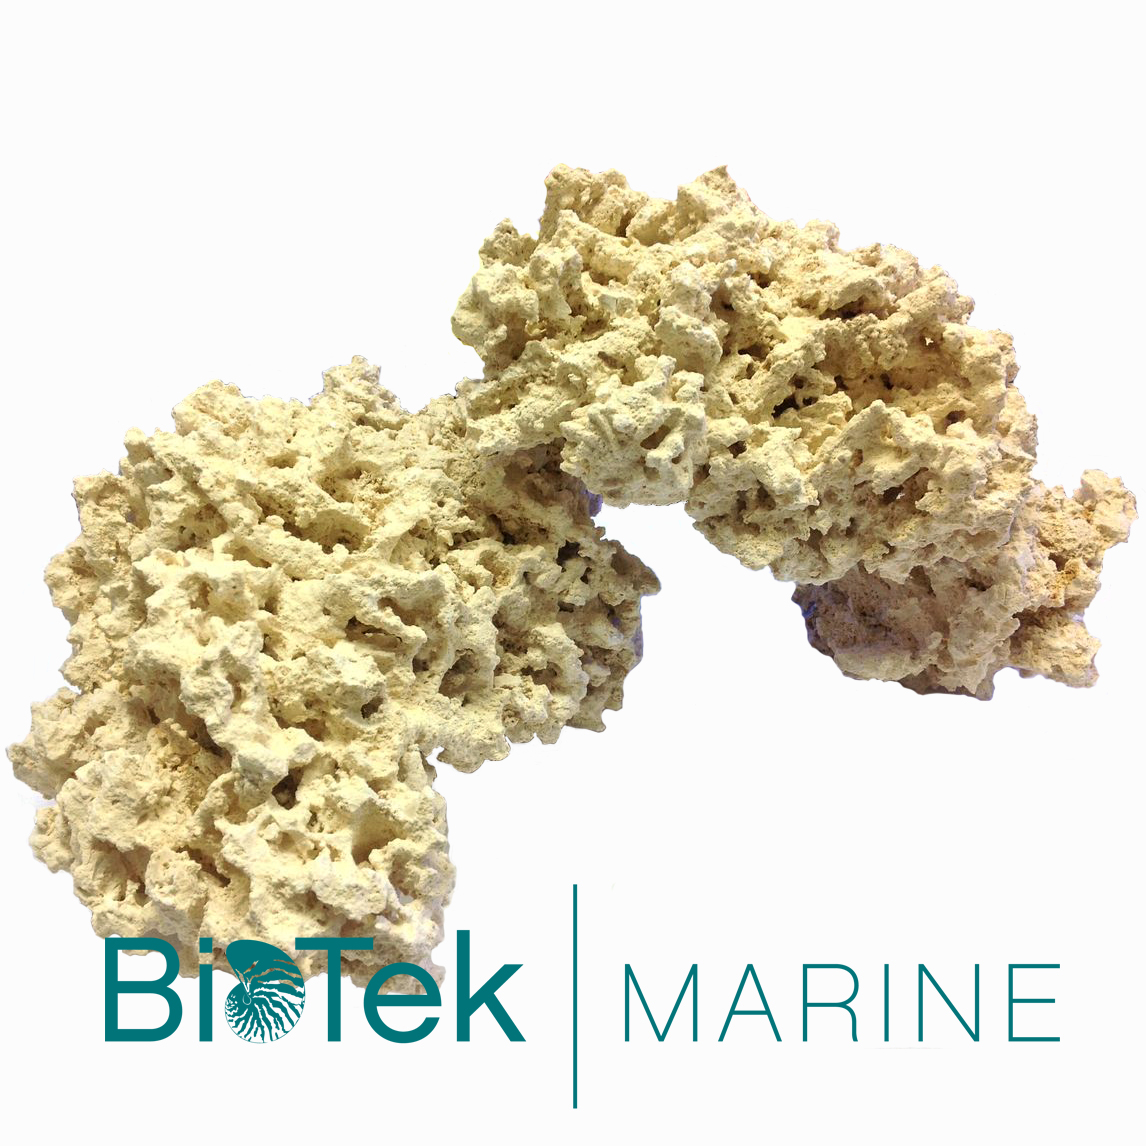 BioTek-Marine-with-logo.jpg